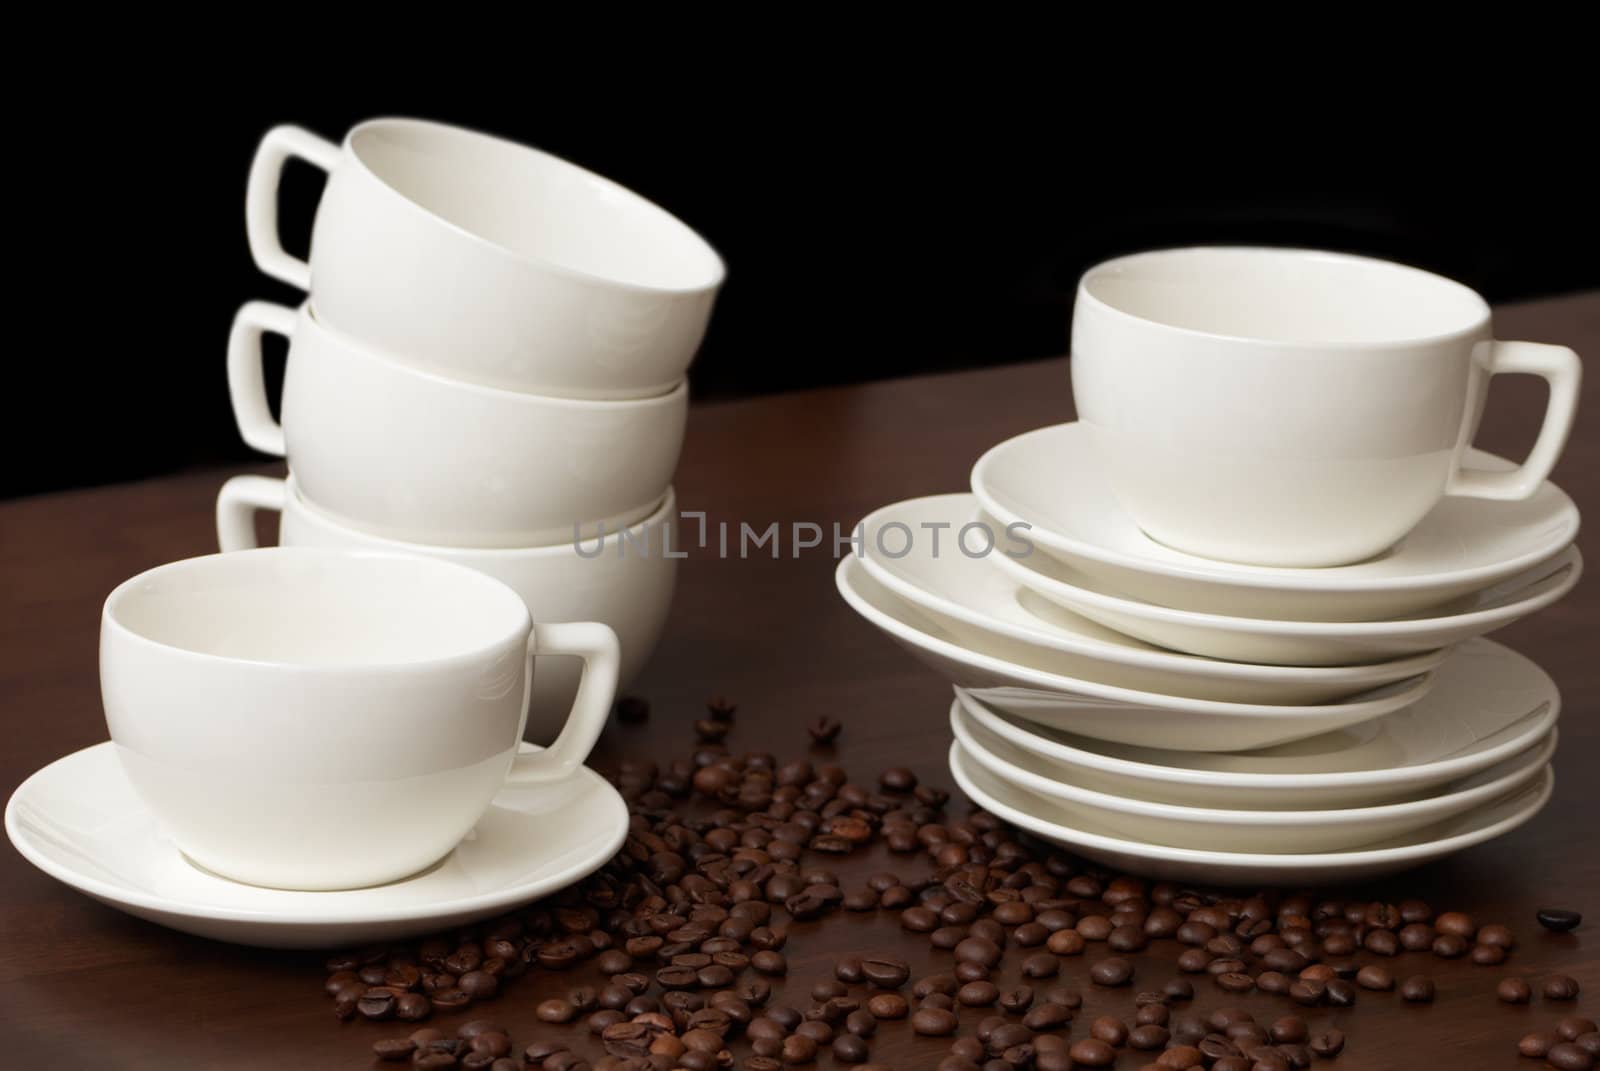 Coffee cups by Olinkau